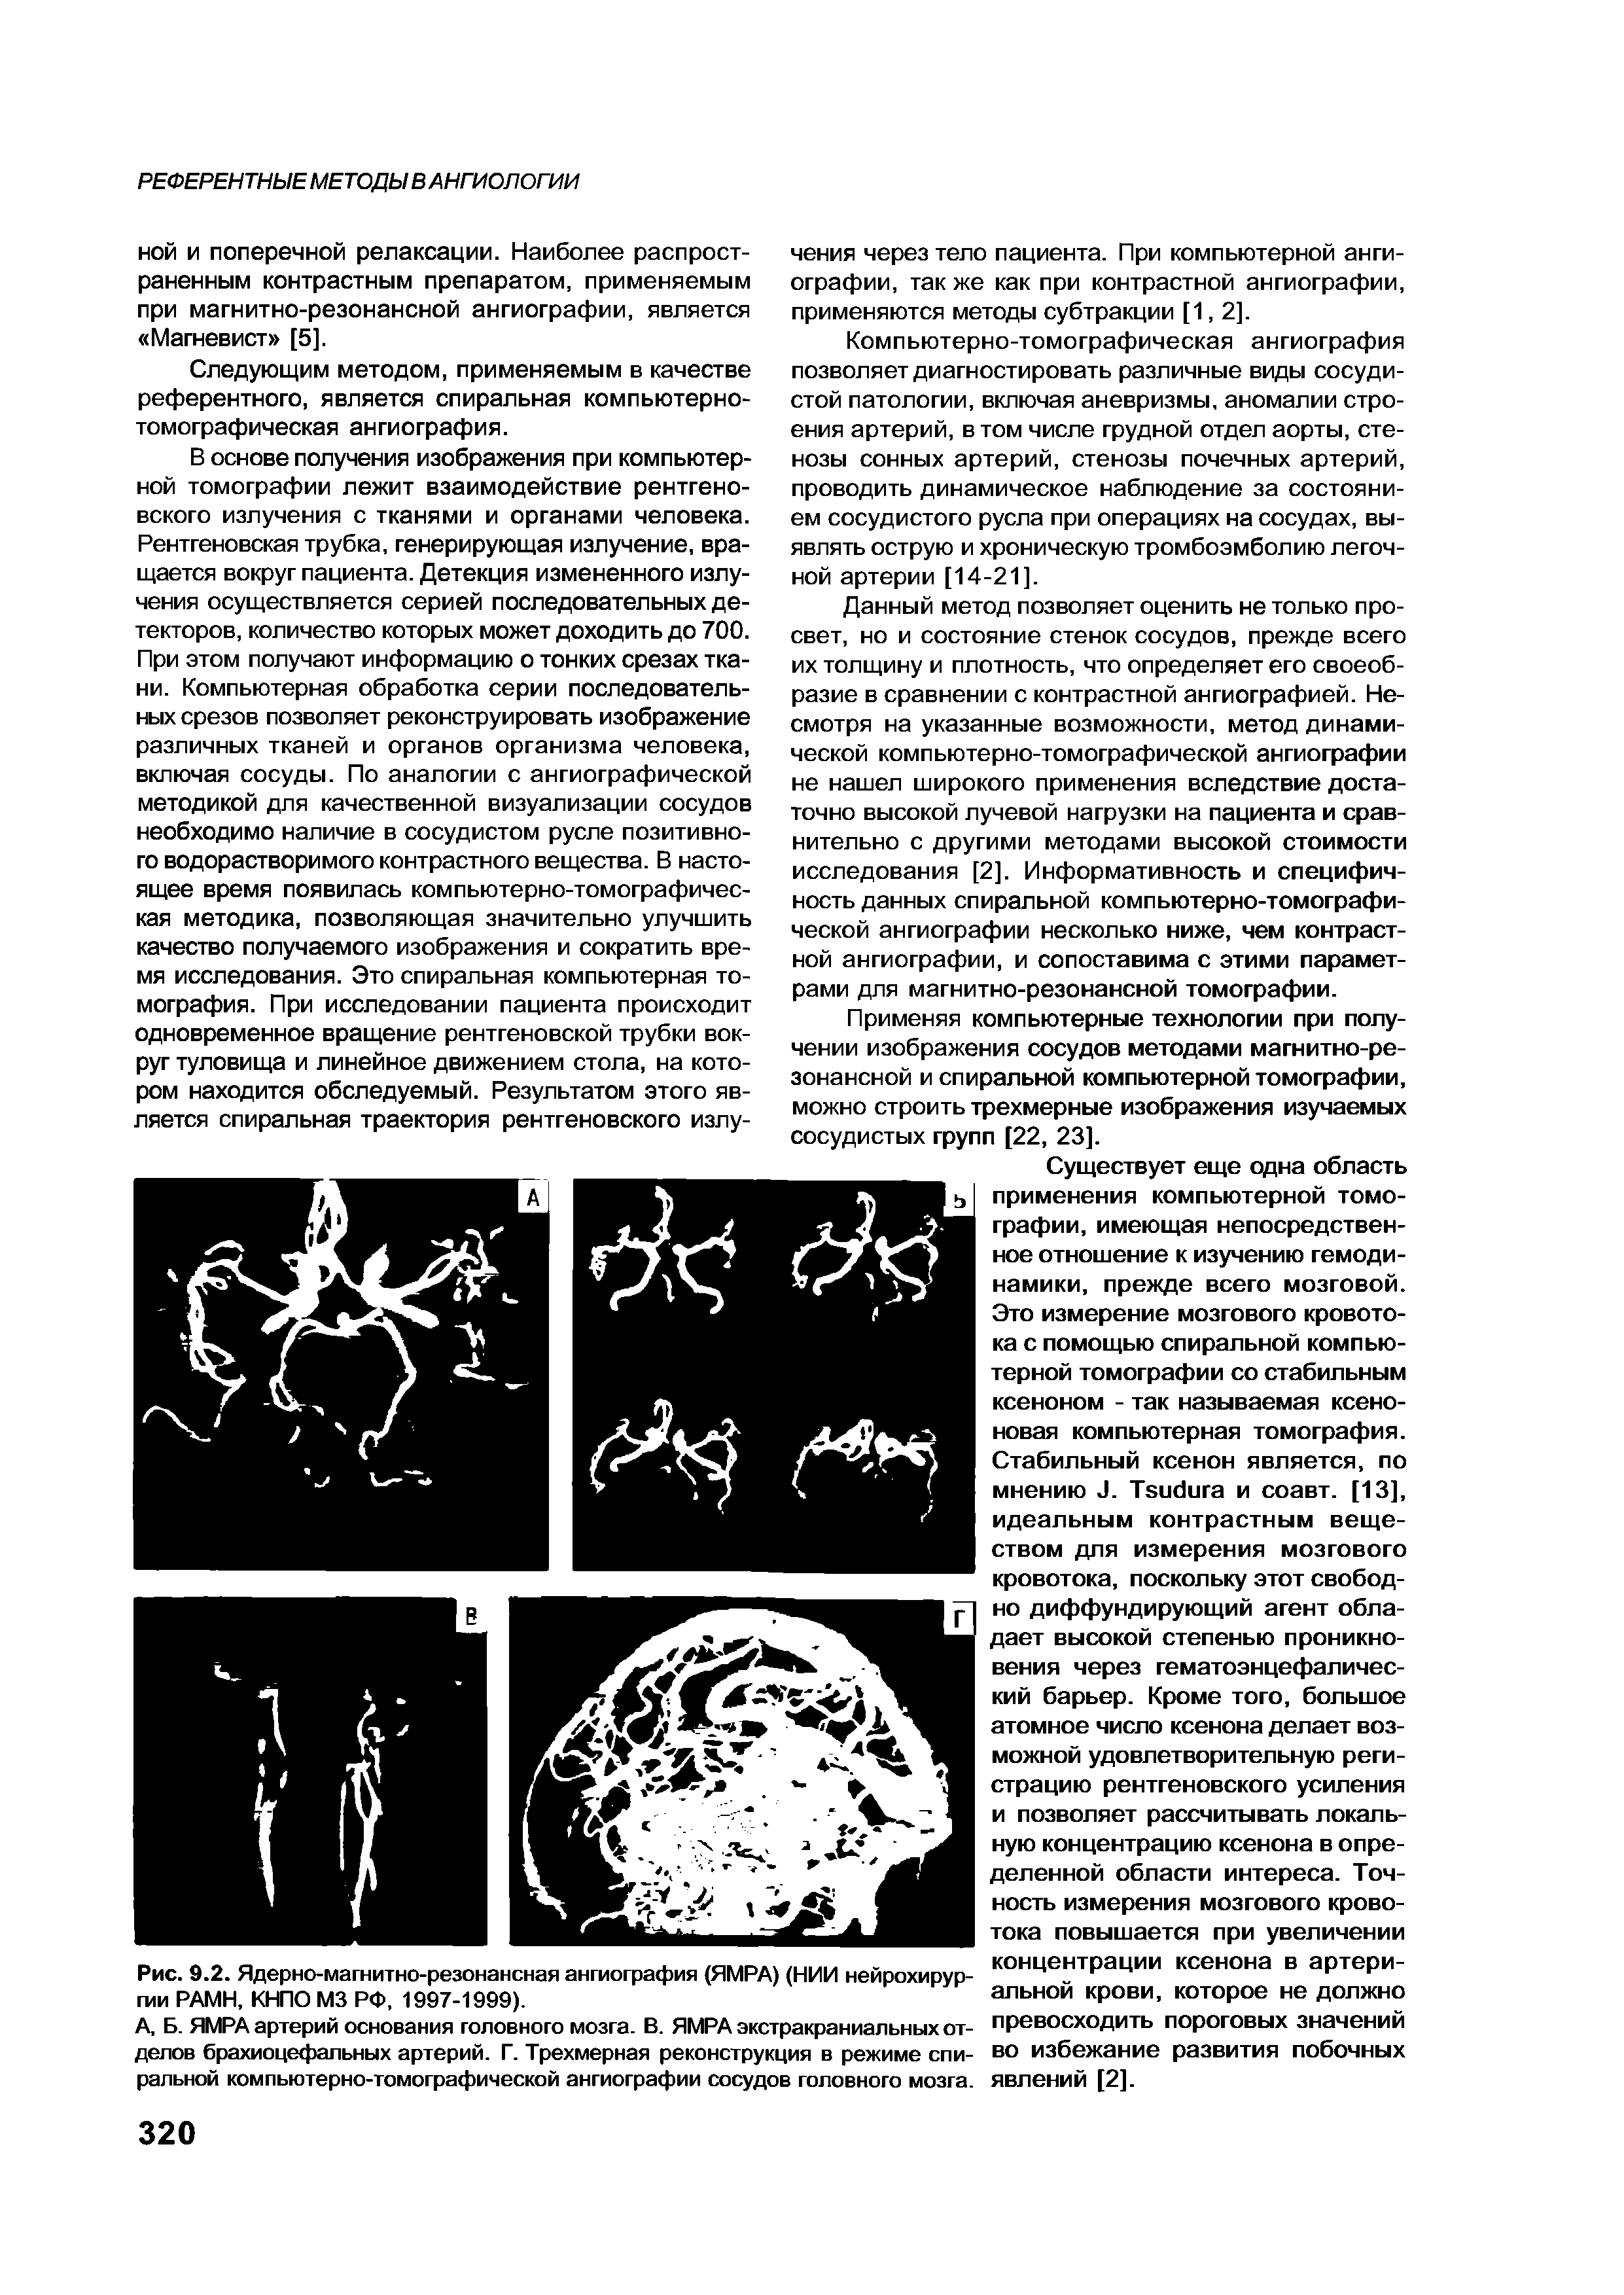 Рис. 9.2. Ядерно-магнитно-резонансная ангиография (ЯМРА) (НИИ нейрохирургии РАМН, КНПО М3 РФ, 1997-1999).